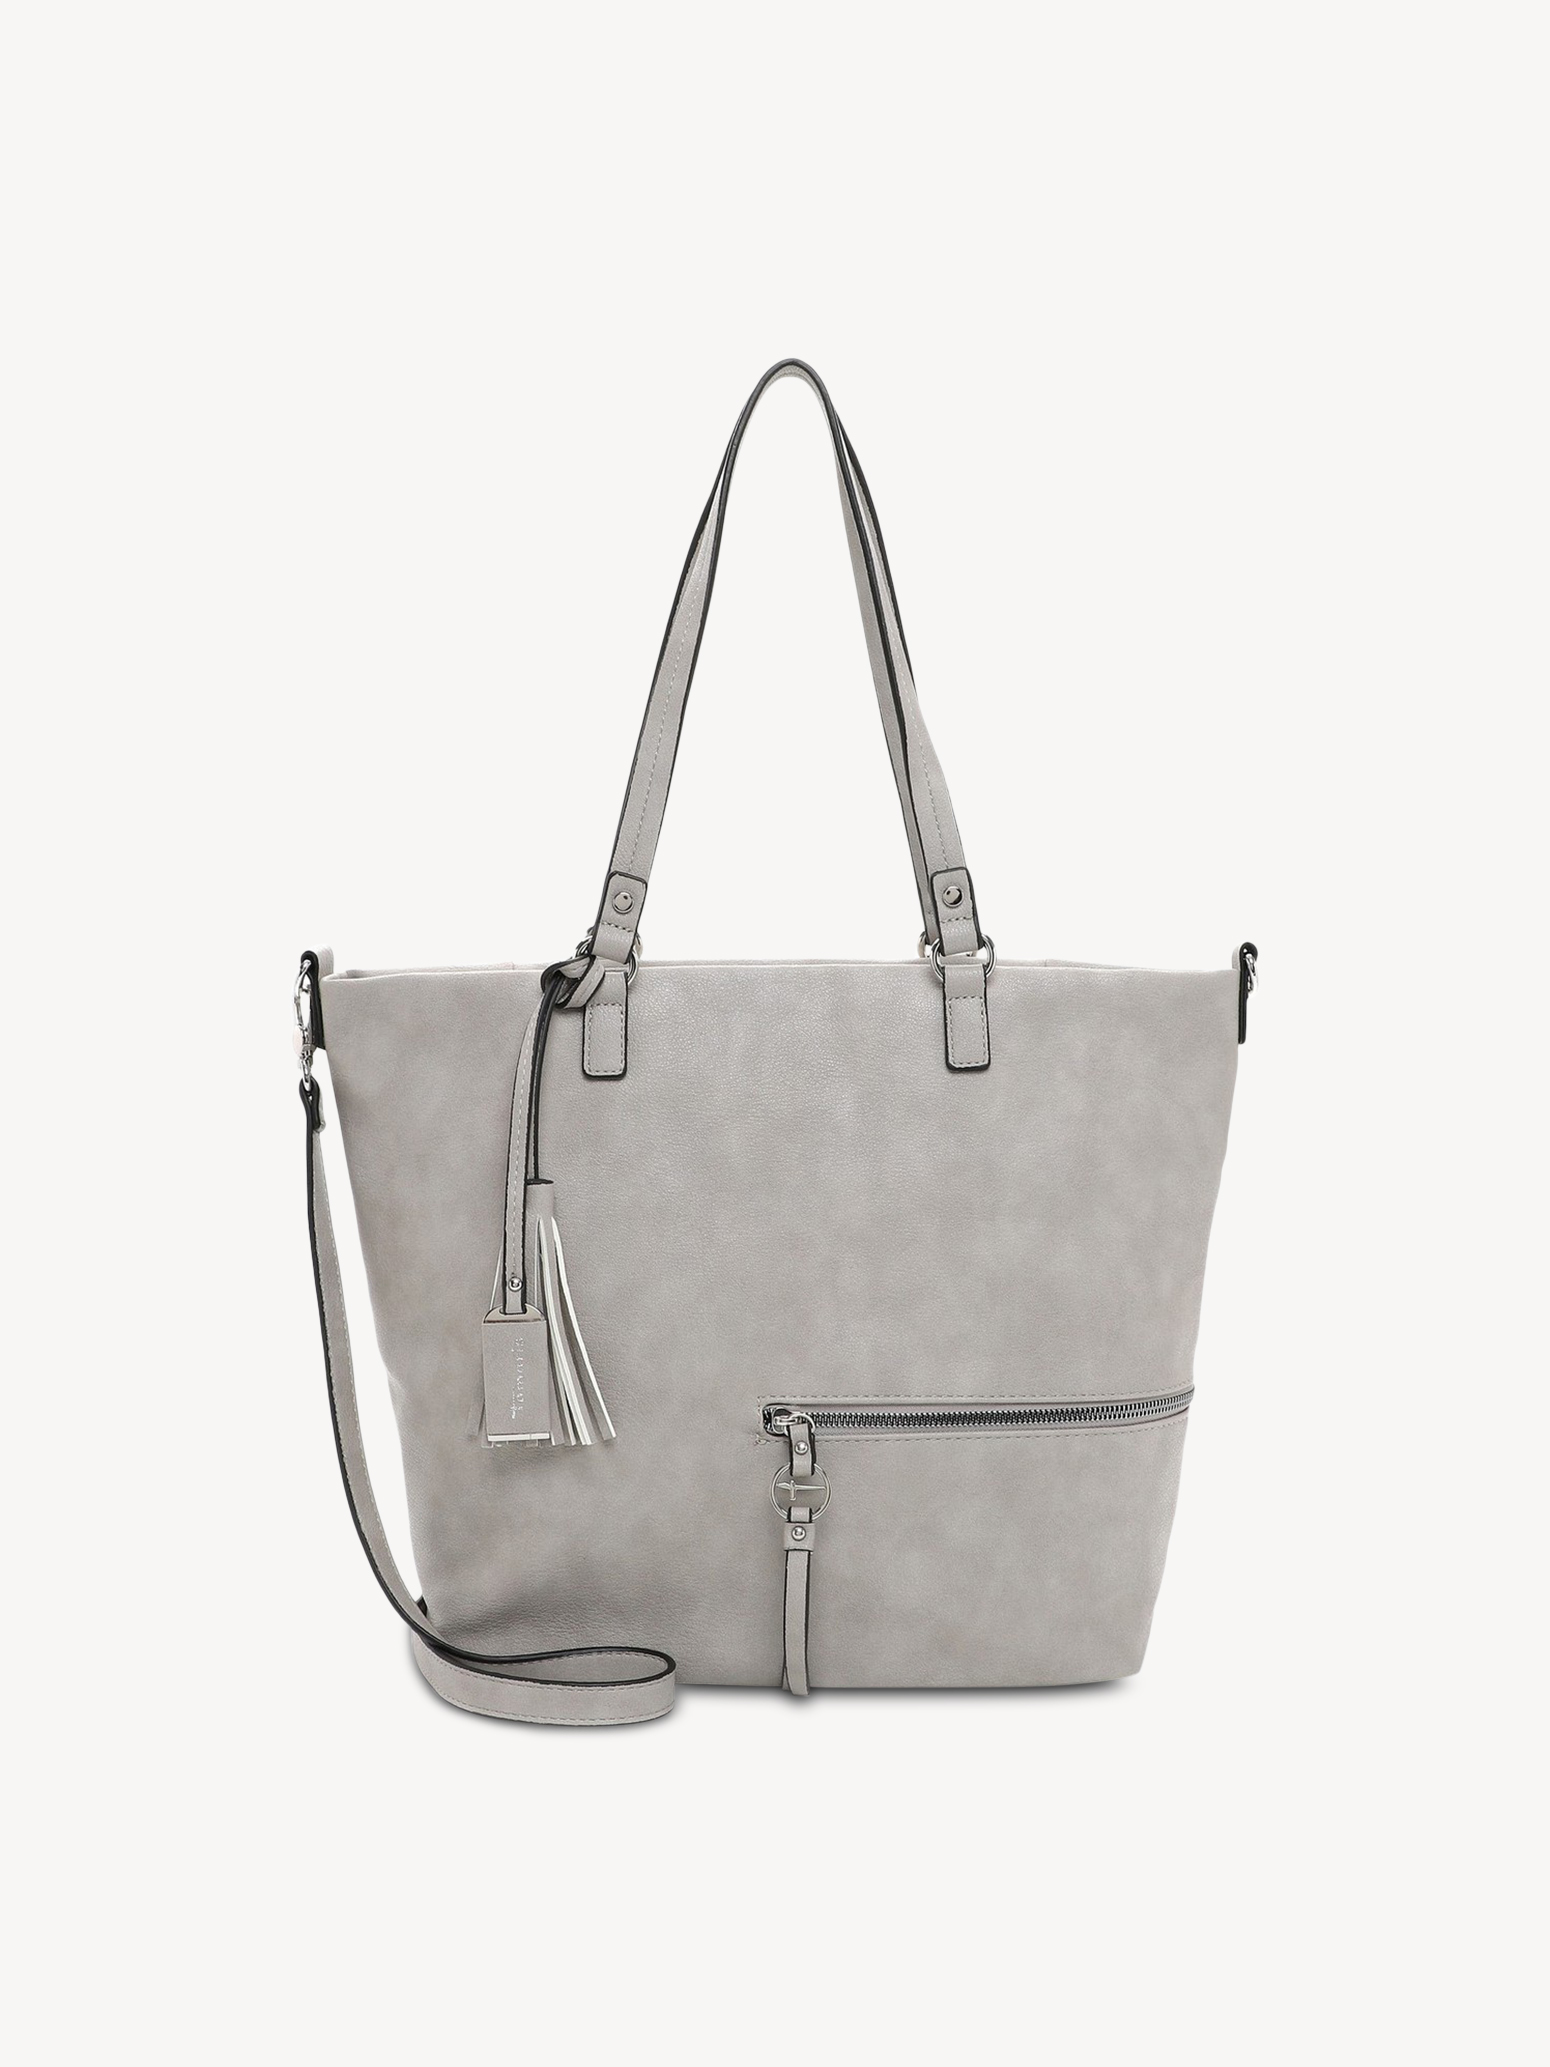 Shopping bag - grey